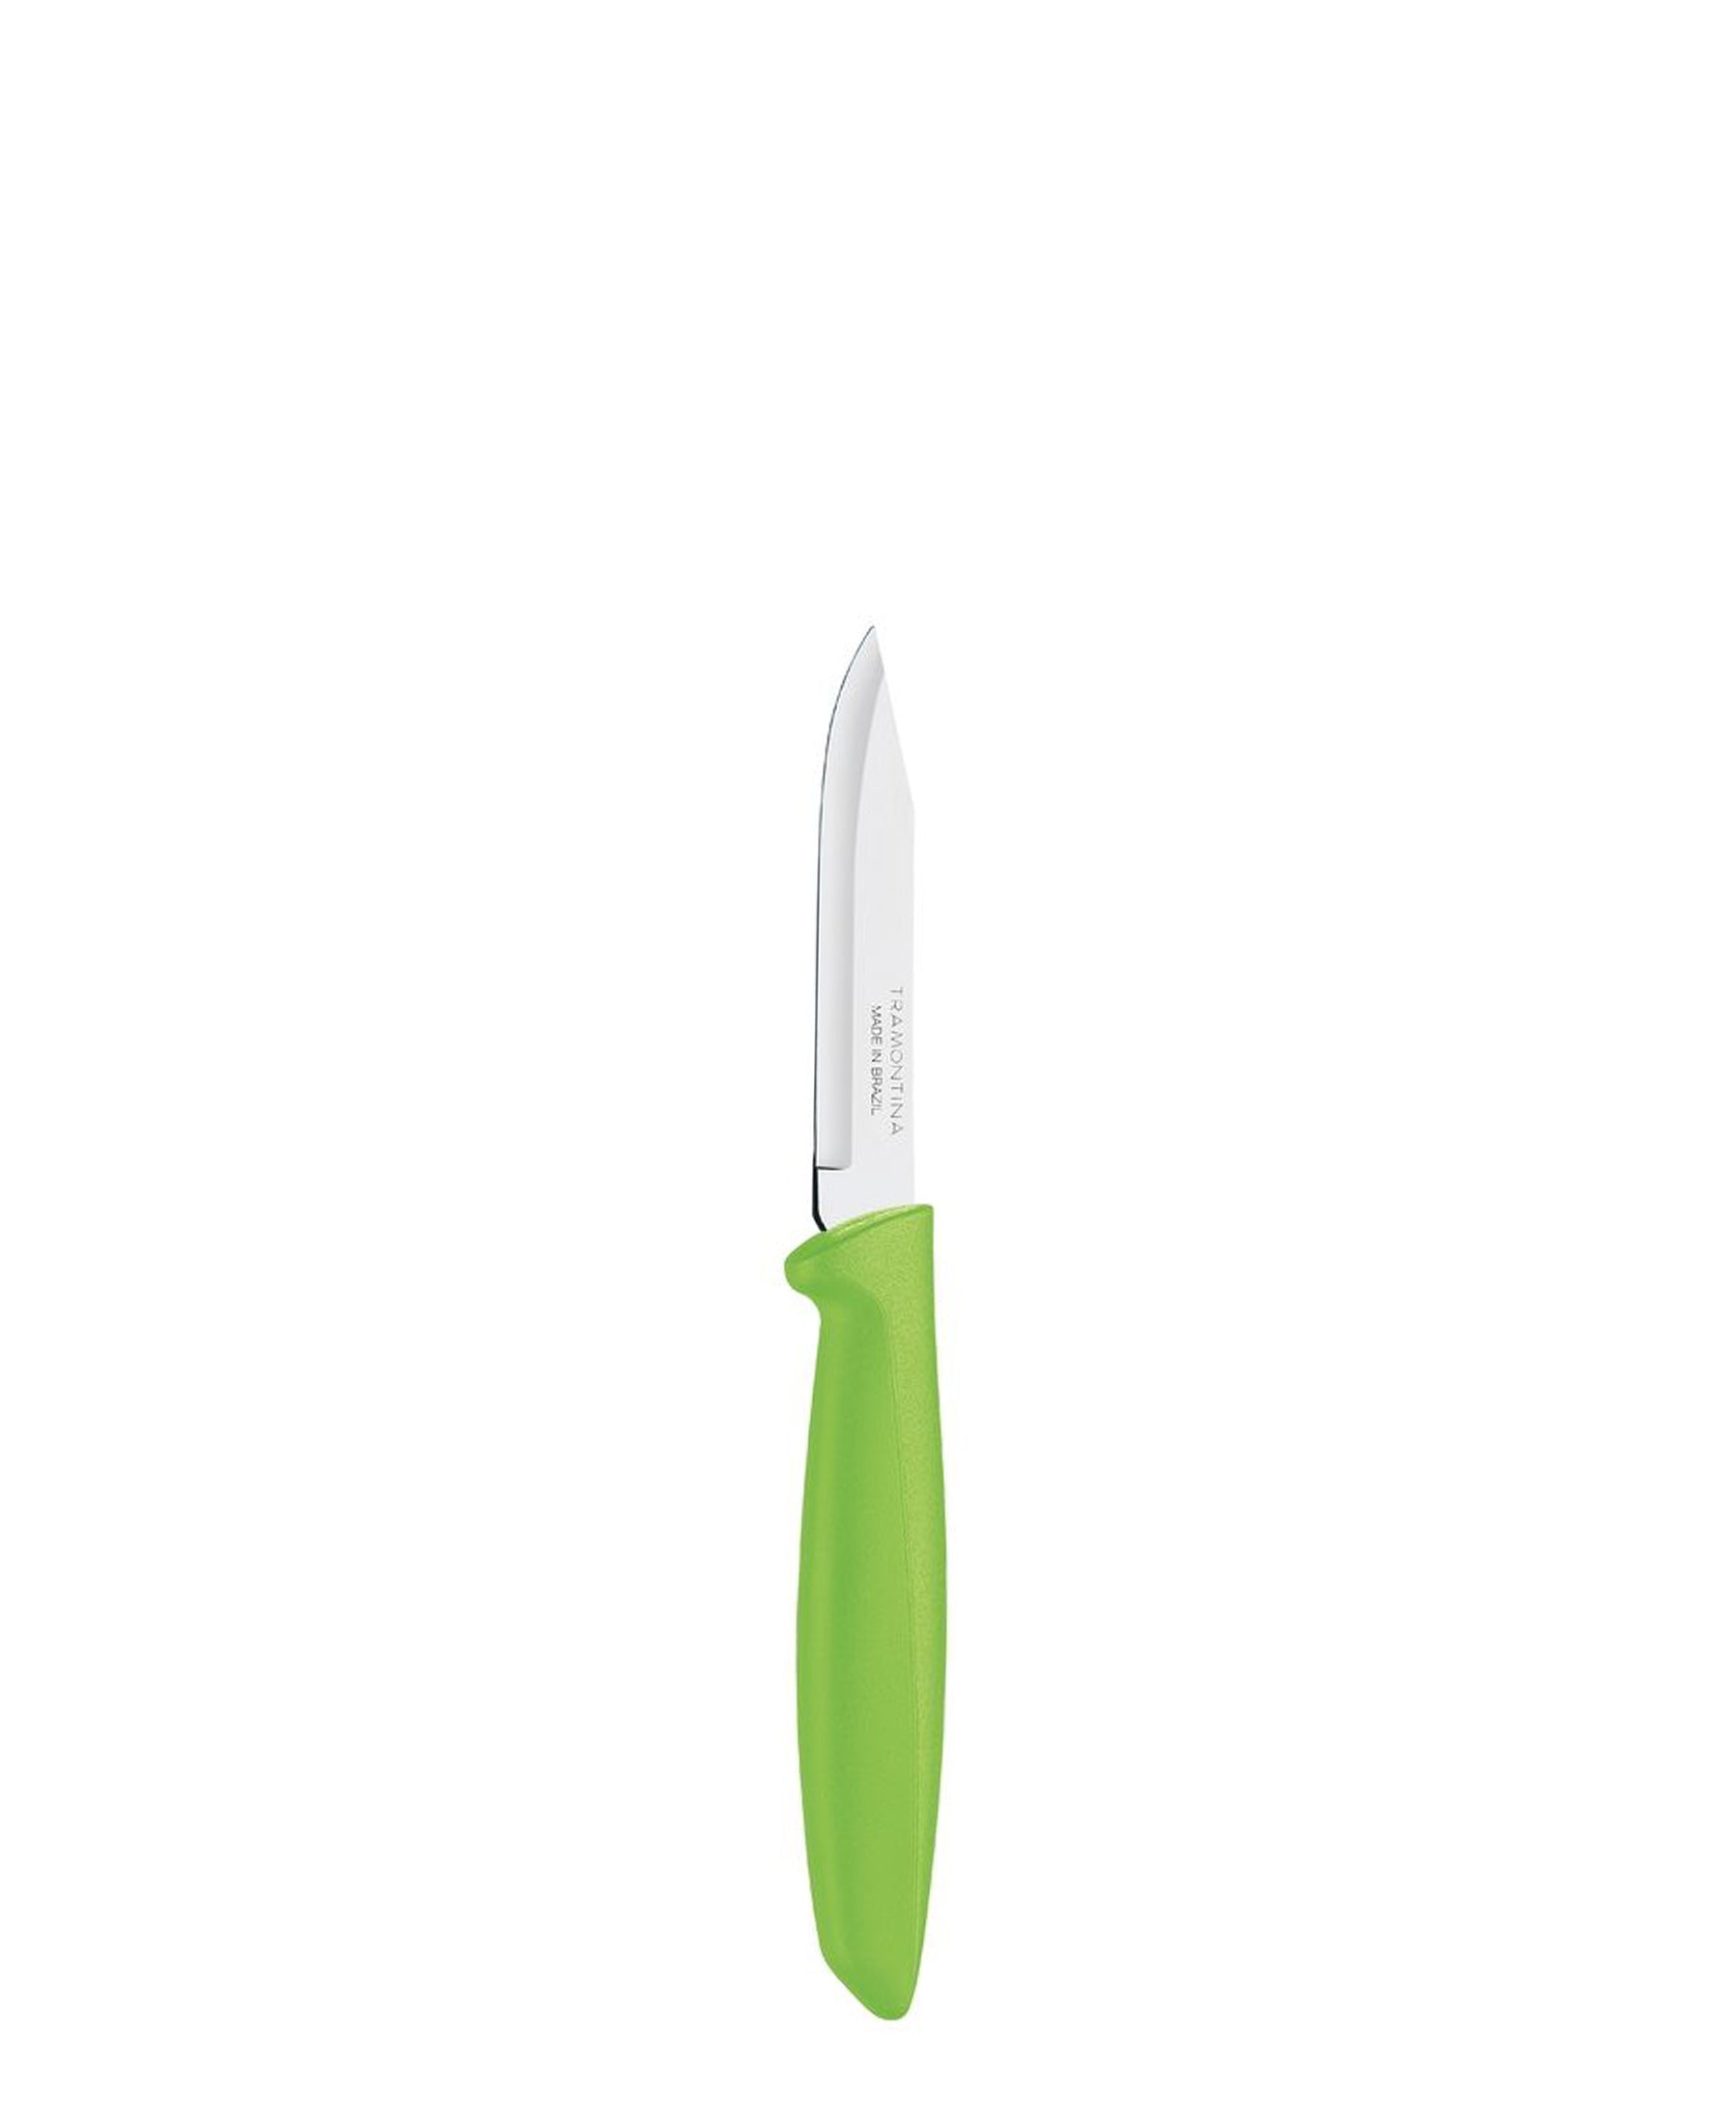 Tramontina 3" Paring 8cm Peeling Knife - Green